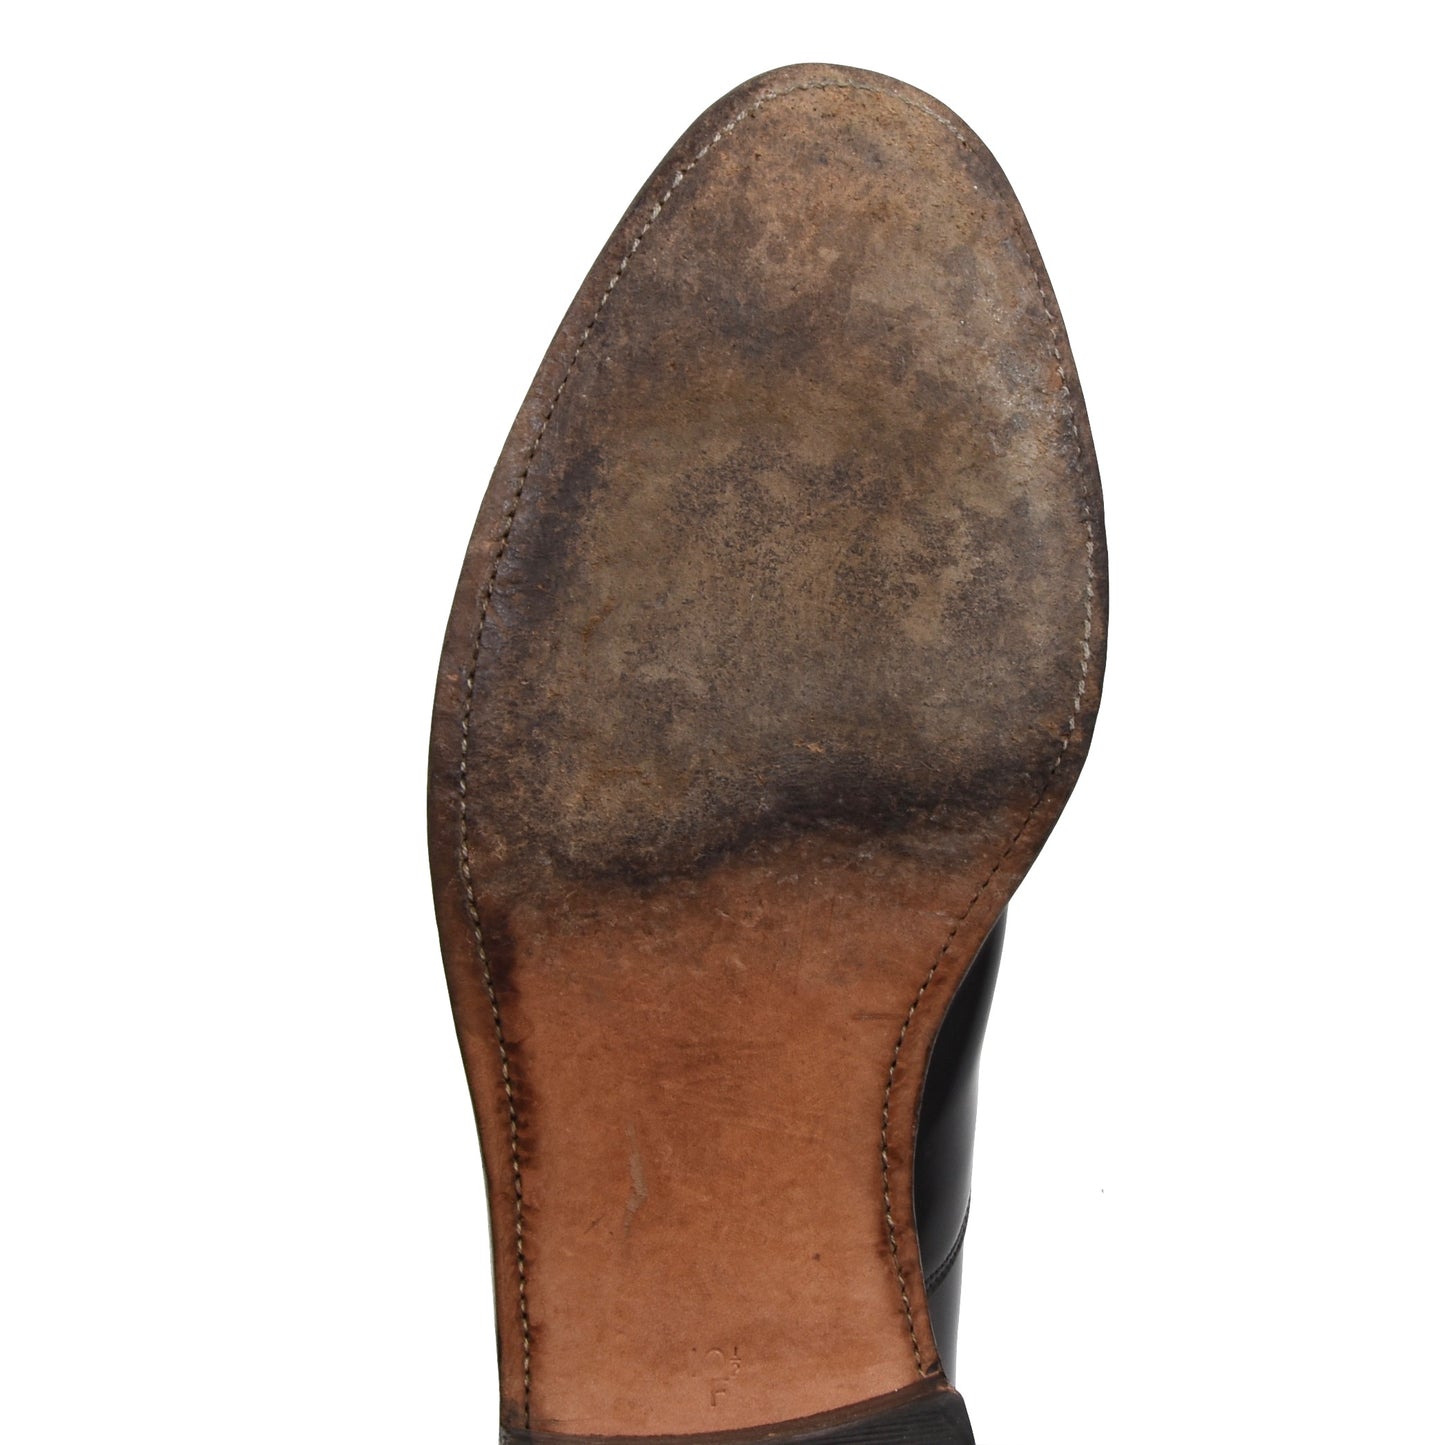 Barker England Oxford Schuhe Größe 10.5F - Schwarz